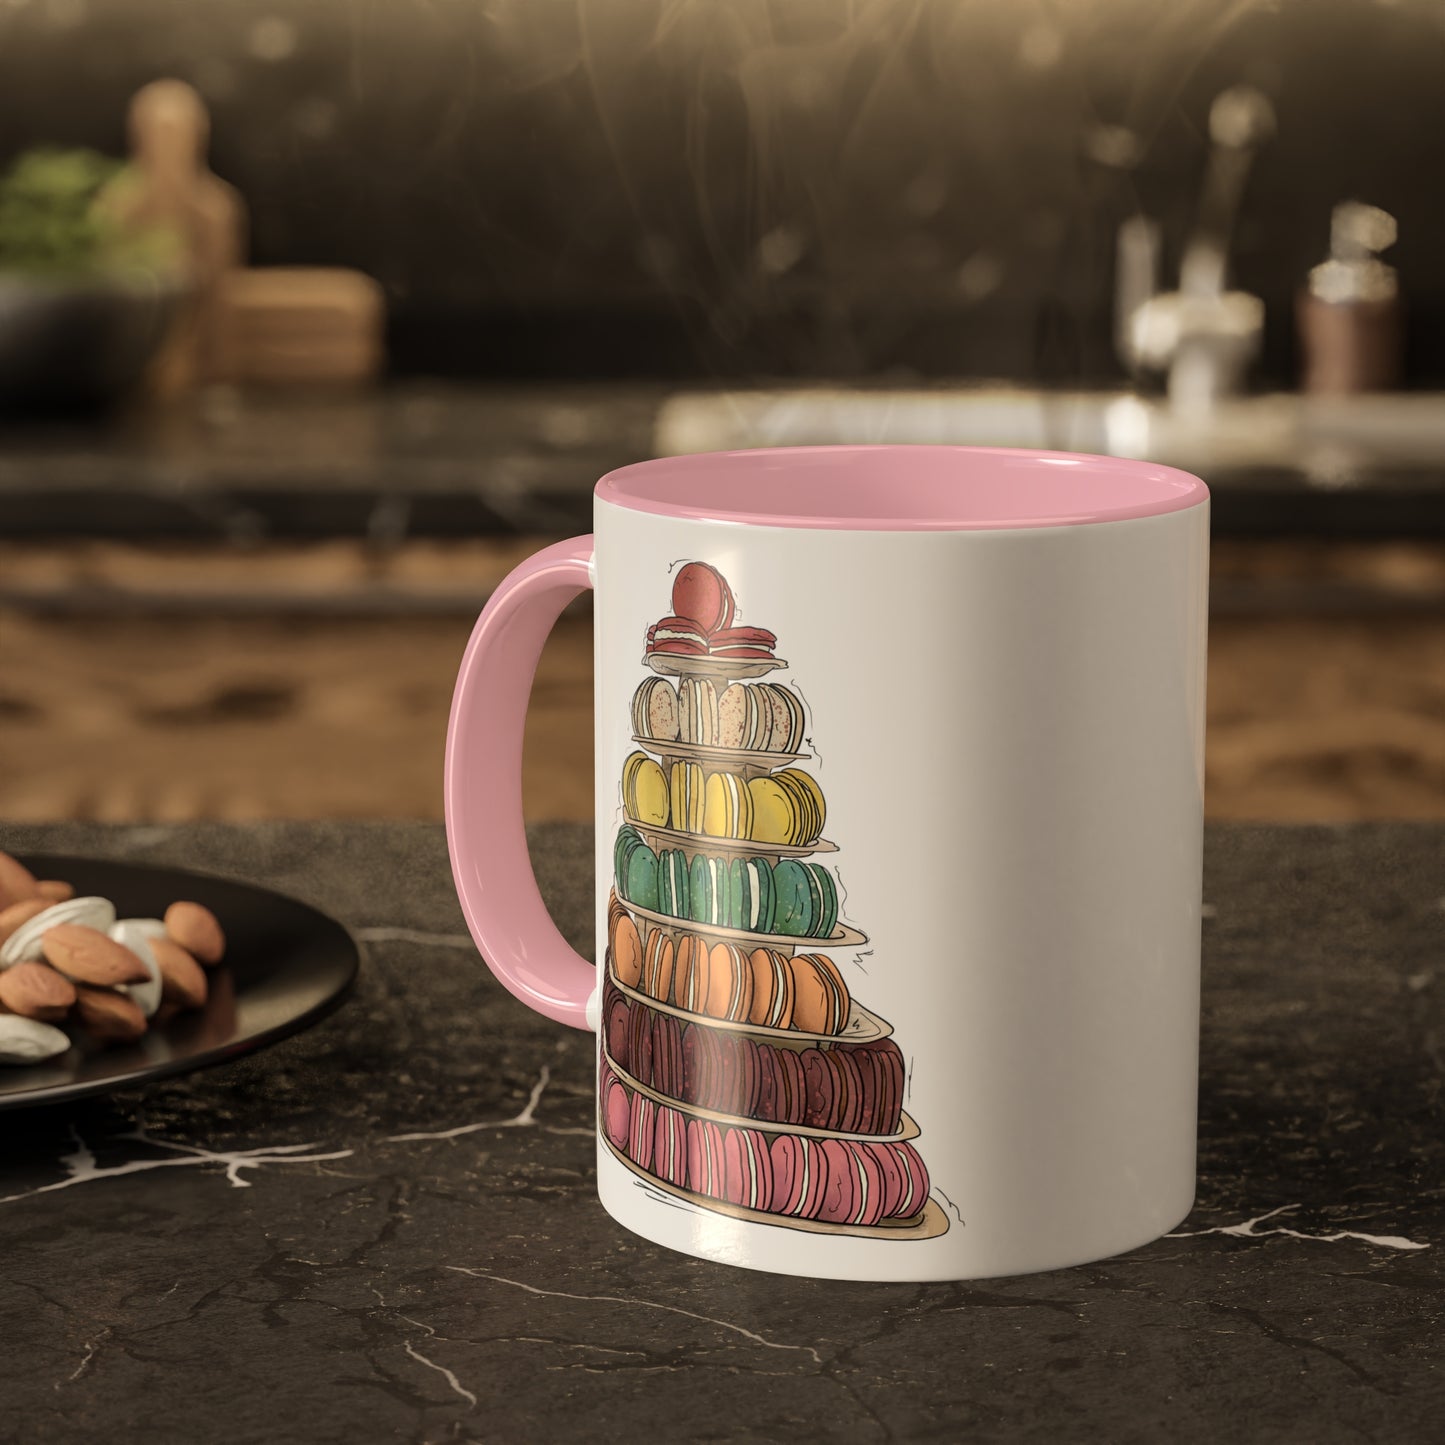 Macaron Tower - Mug